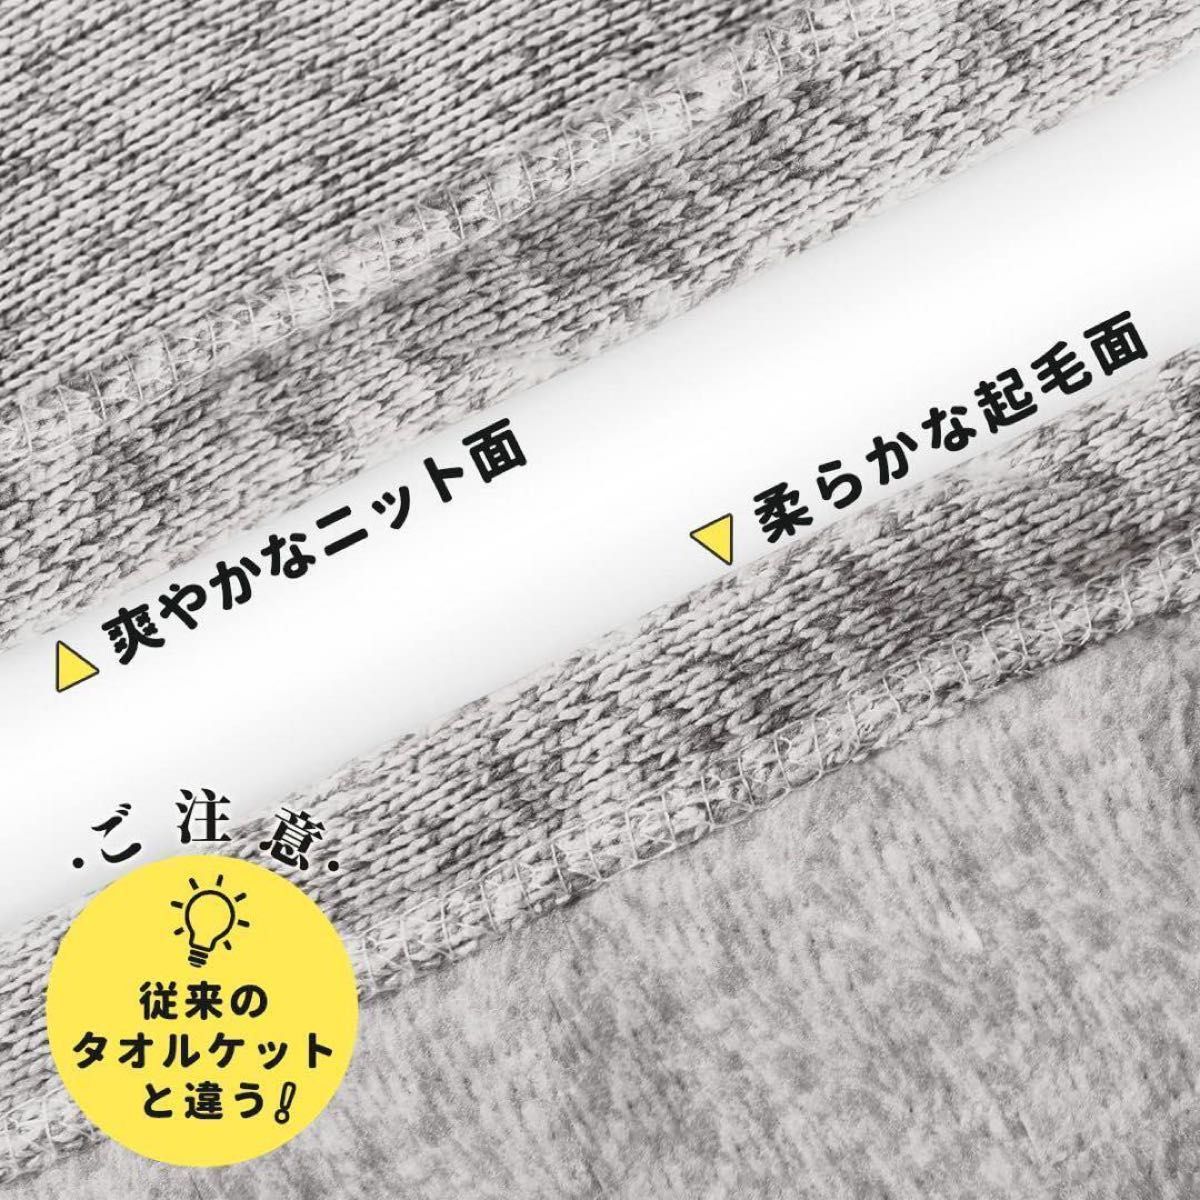 タオルケット ダブル 180ⅹ200cm 大判 夏用 ほつれにくい ソファー用 ふんわりあったか毛布